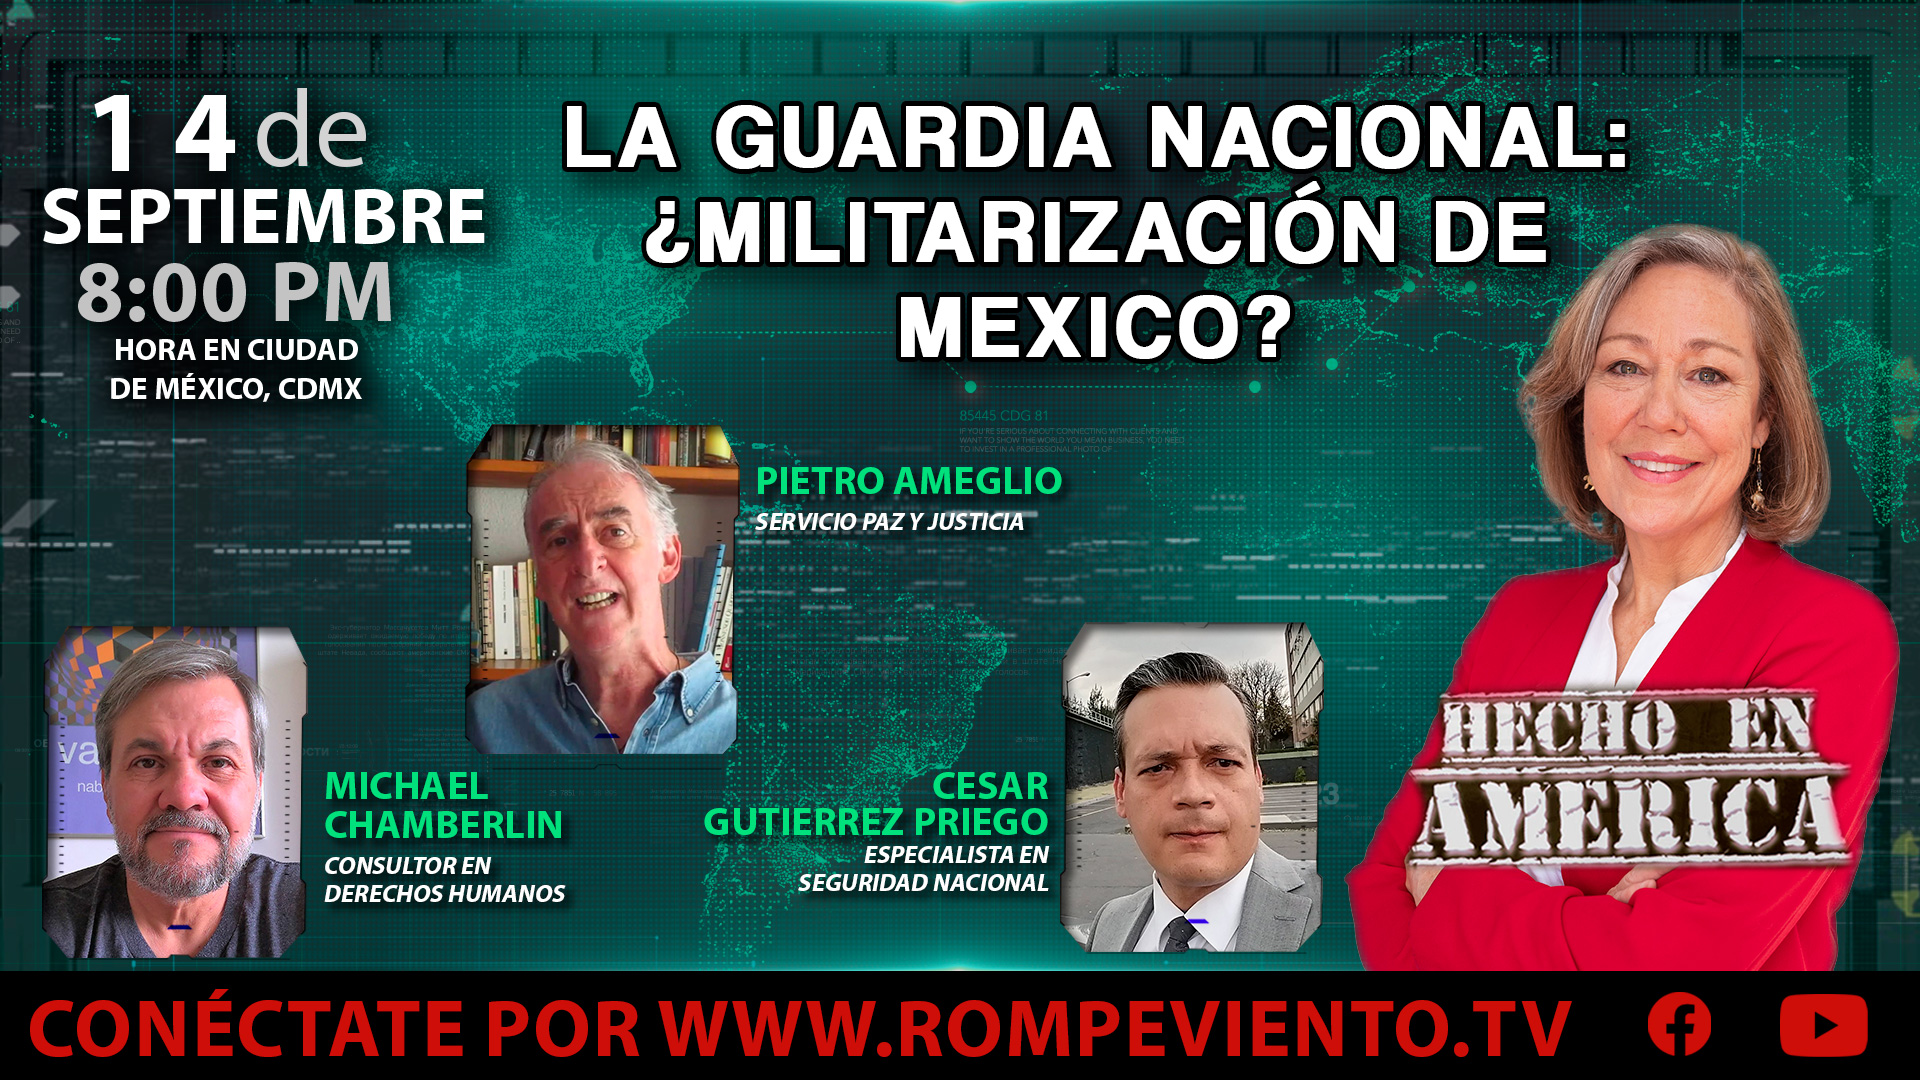 La Guardia Nacional: ¿Militarización de Mexico? - Hecho en América